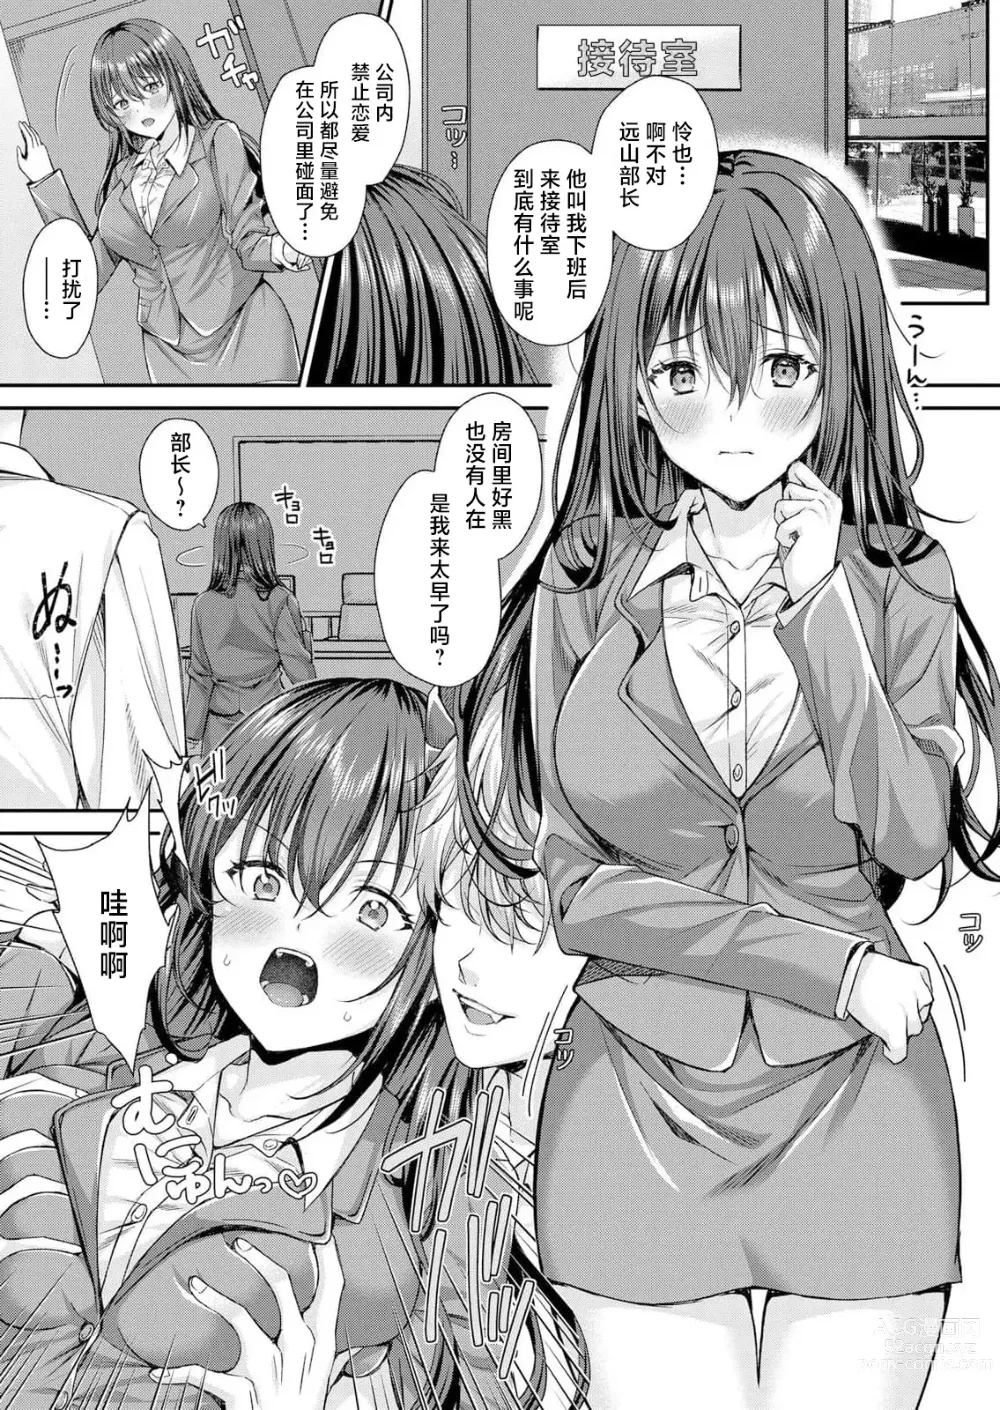 Page 3 of manga 在空无一人的接待室内被他肏开因受到淫魔的惩罚而连续高潮不止的SEX